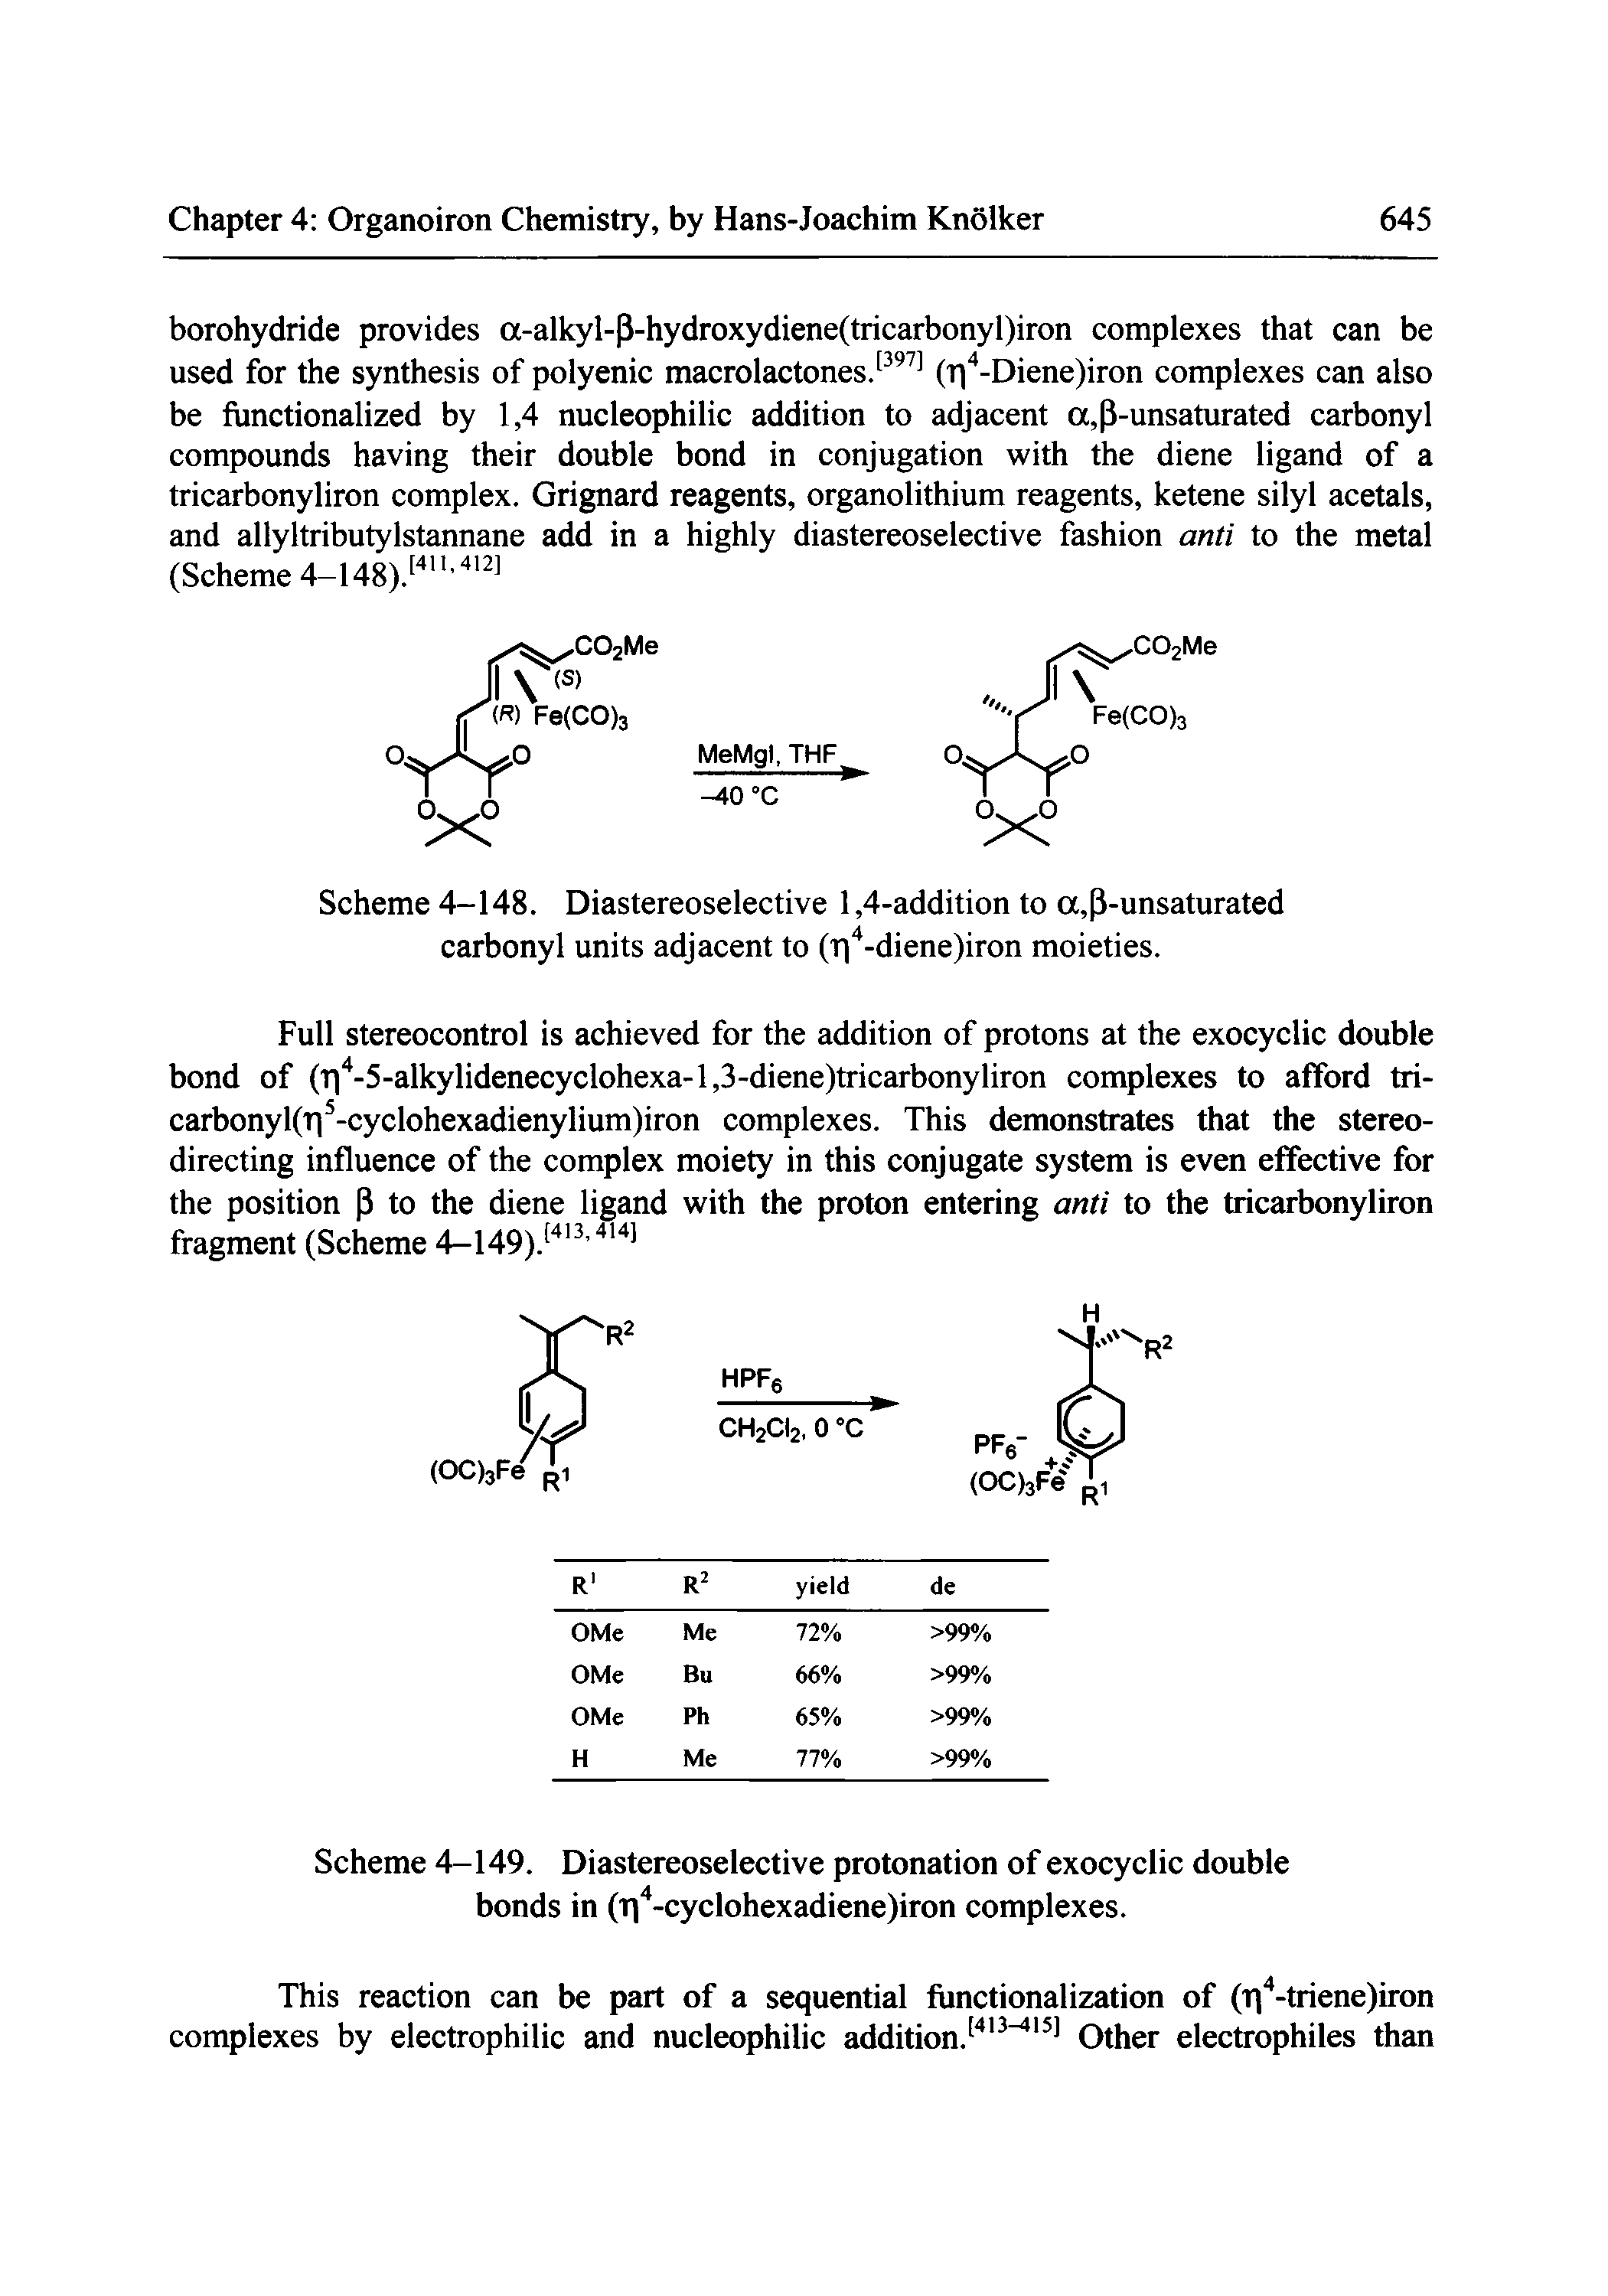 Scheme 4—149. Diastereoselective protonation of exocyclic double bonds in (Ti -cyclohexadiene)iron complexes.